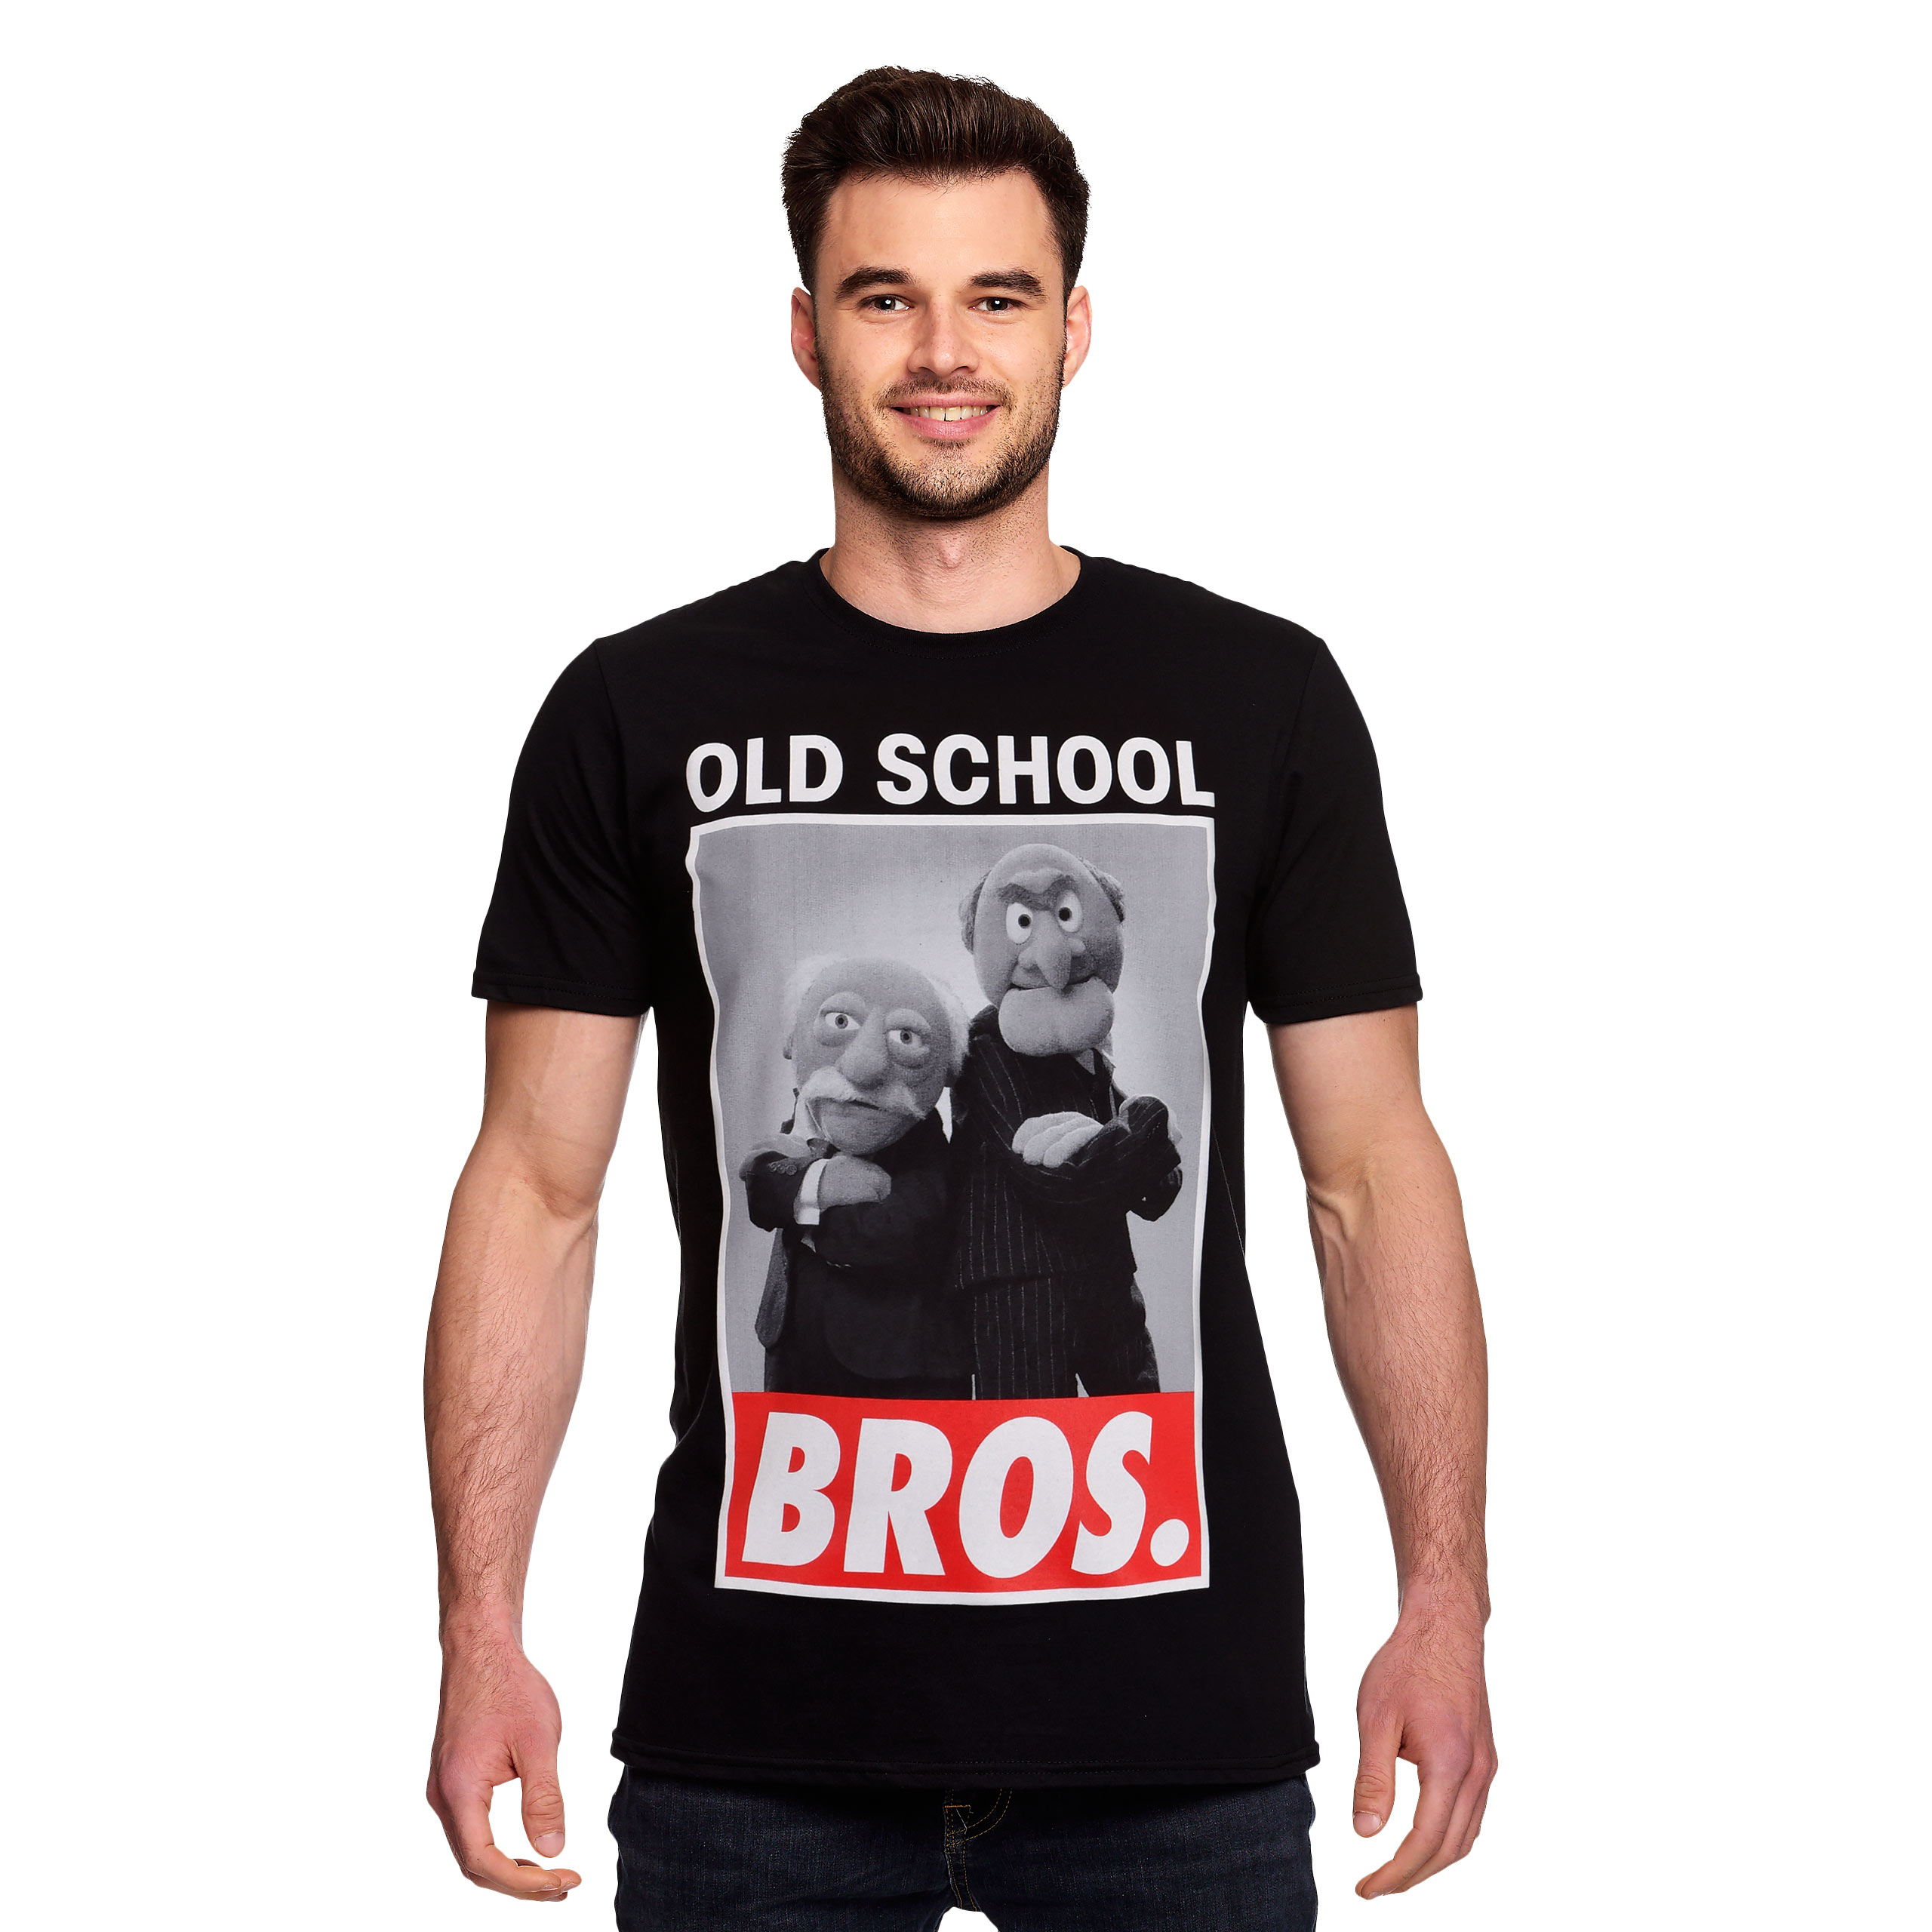 Muppets - Old School Bros. T-Shirt schwarz